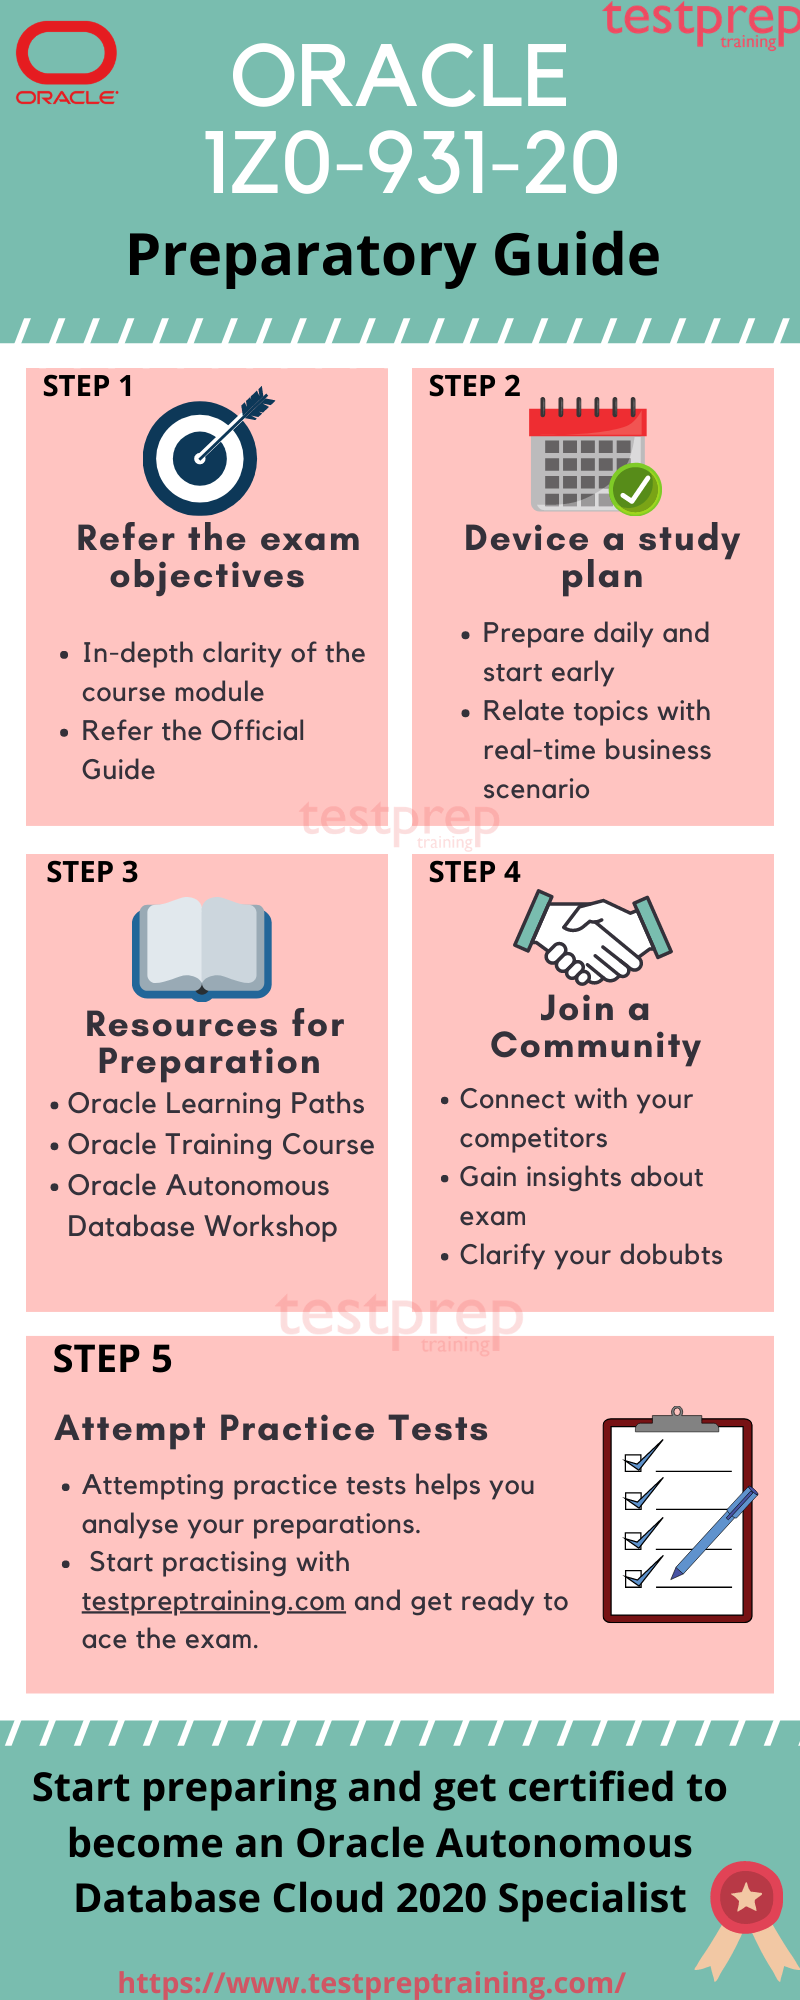 Oracle 1Z0-931-20 Preparatory Guide